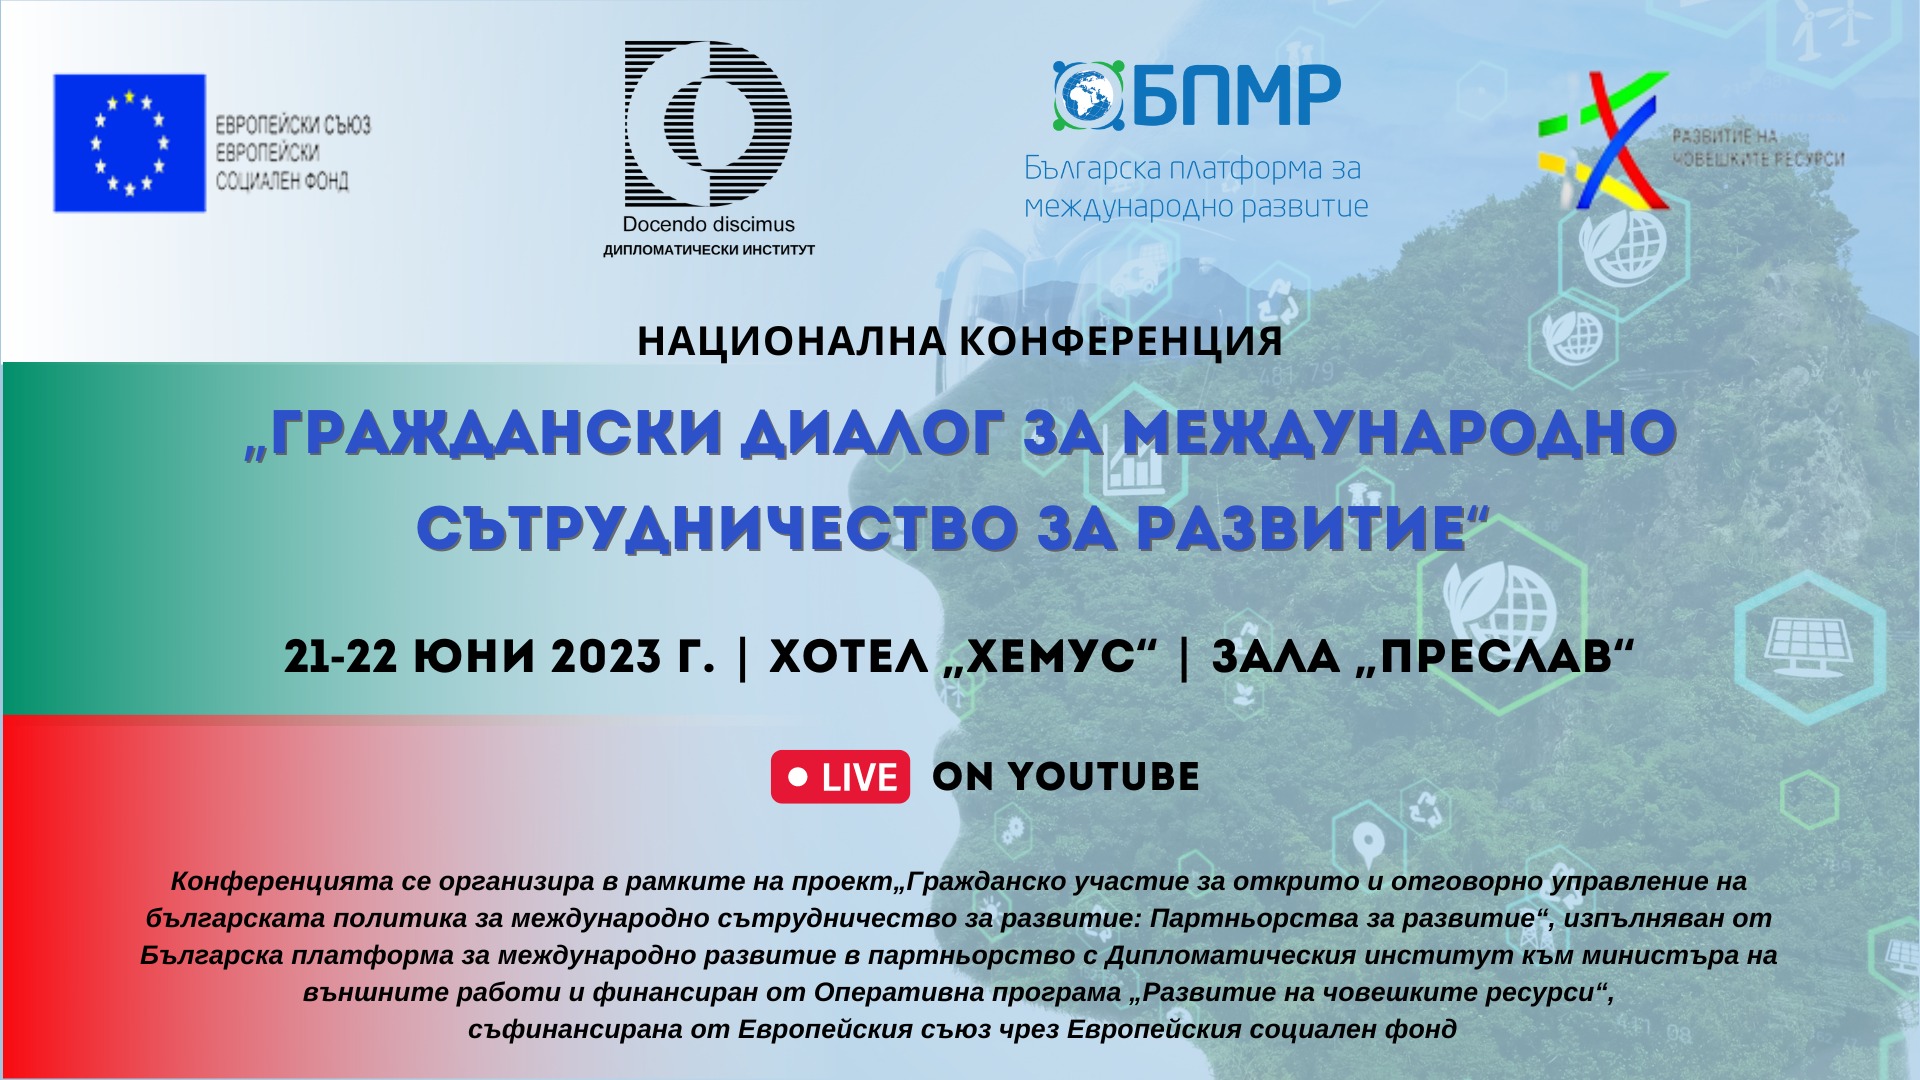 Българската платформа за международно развитие и Дипломатическият институт организират двудневна конференция „Граждански диалог